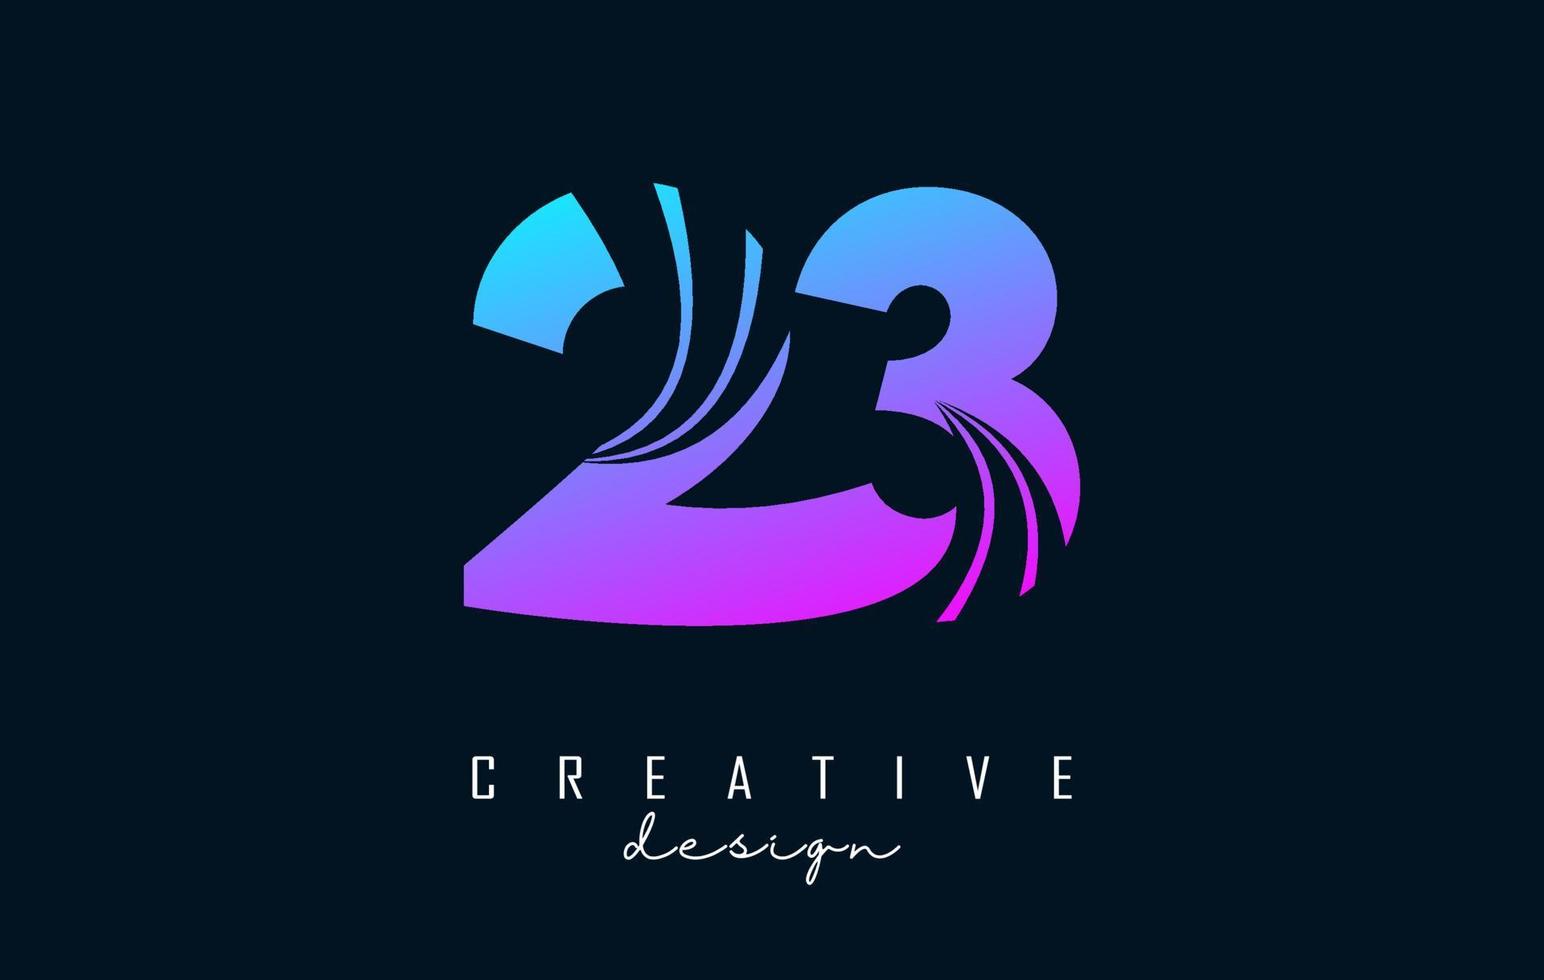 buntes kreatives nummer 23 2 3 logo mit führenden linien und straßenkonzeptdesign. Nummer mit geometrischem Design. vektor